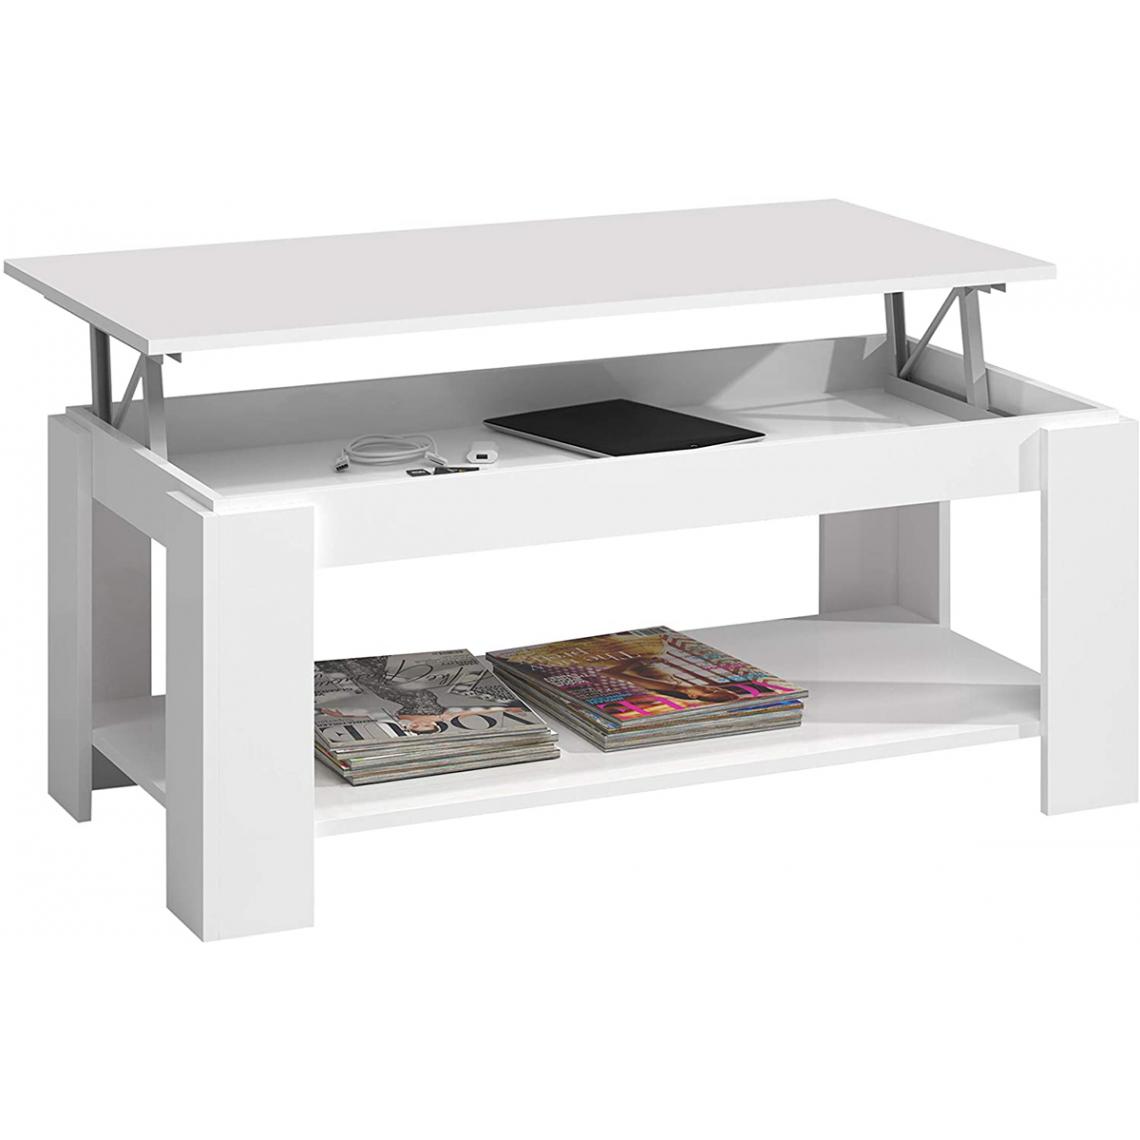 Pegane - Table Basse relevable coloris blanc artic - Longueur 102 cm x Hauteur 43-54 cm x Profondeur 50 cm - Tables basses